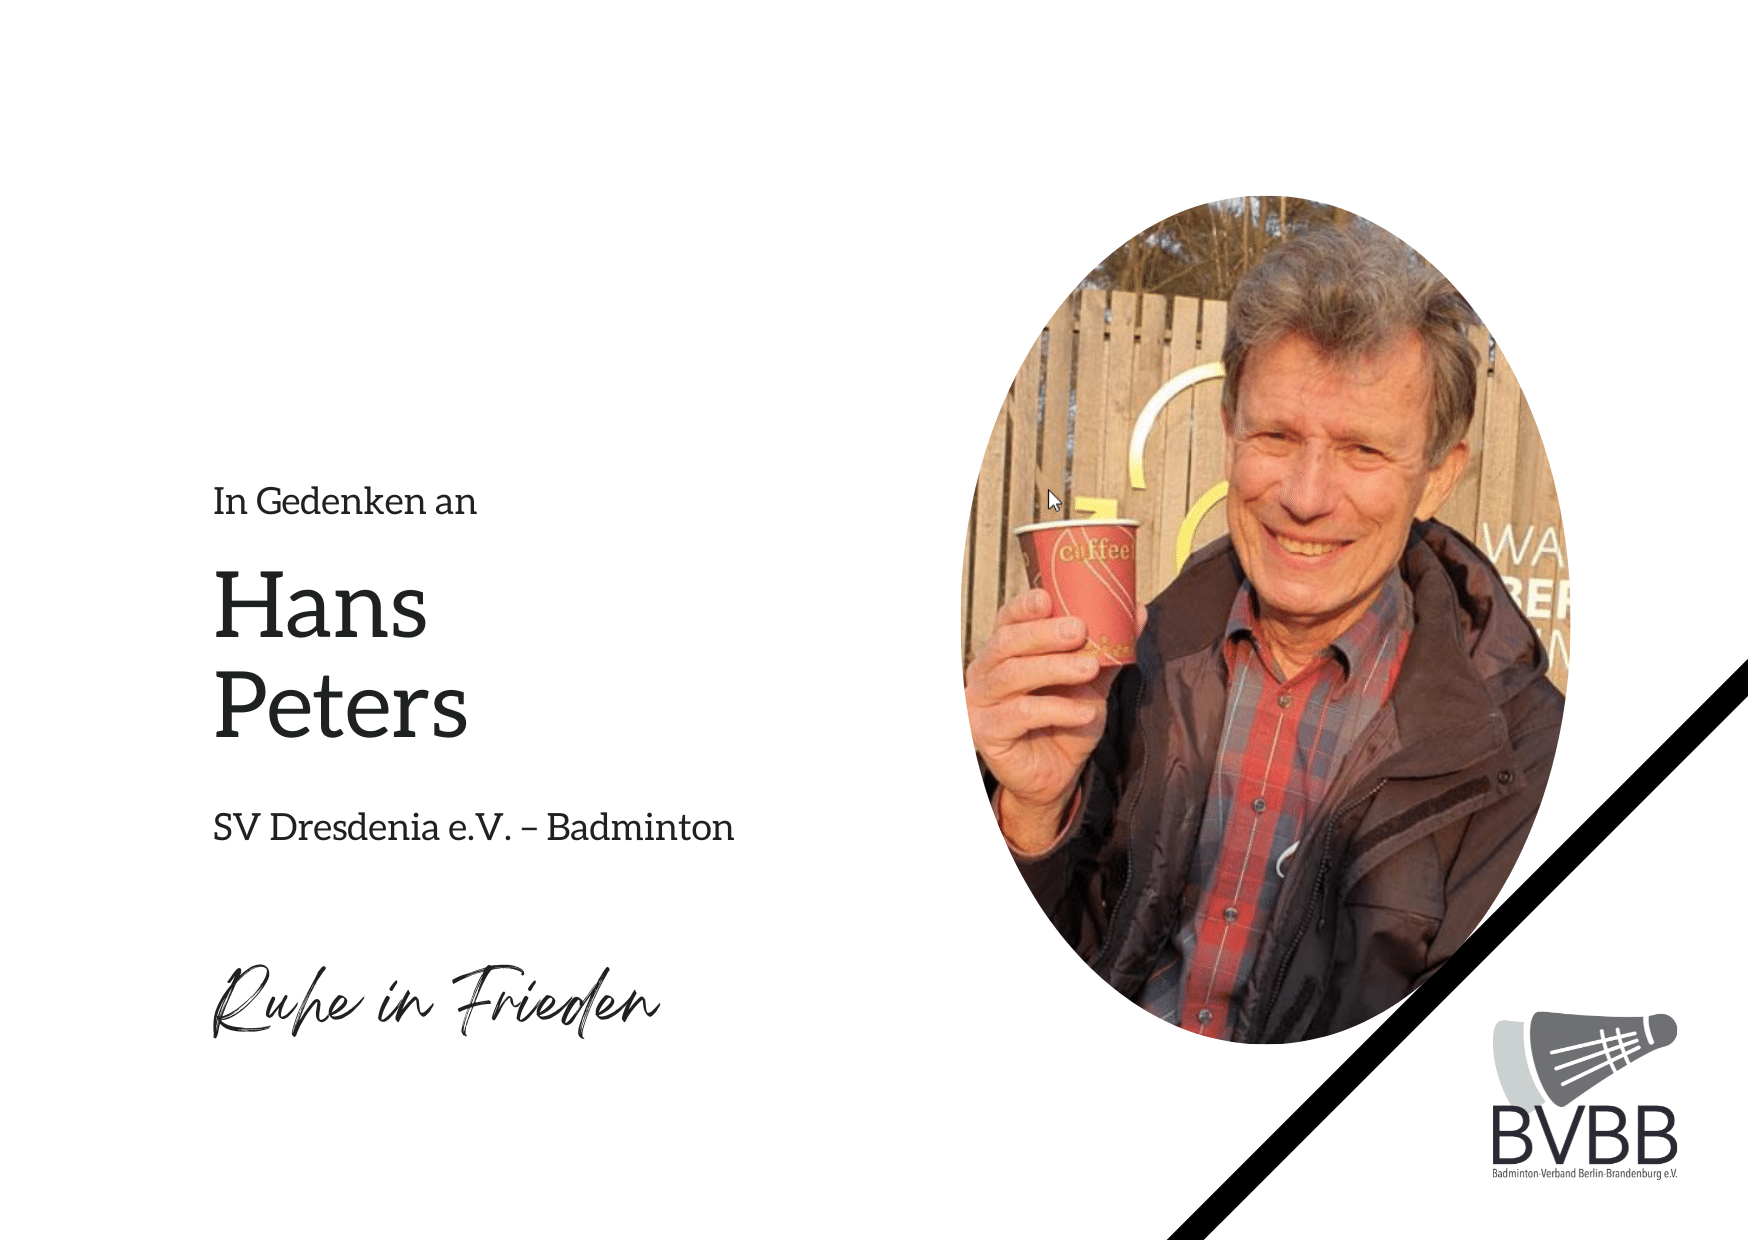 Nachruf des SV Dresdenia e.V für Hans Peters